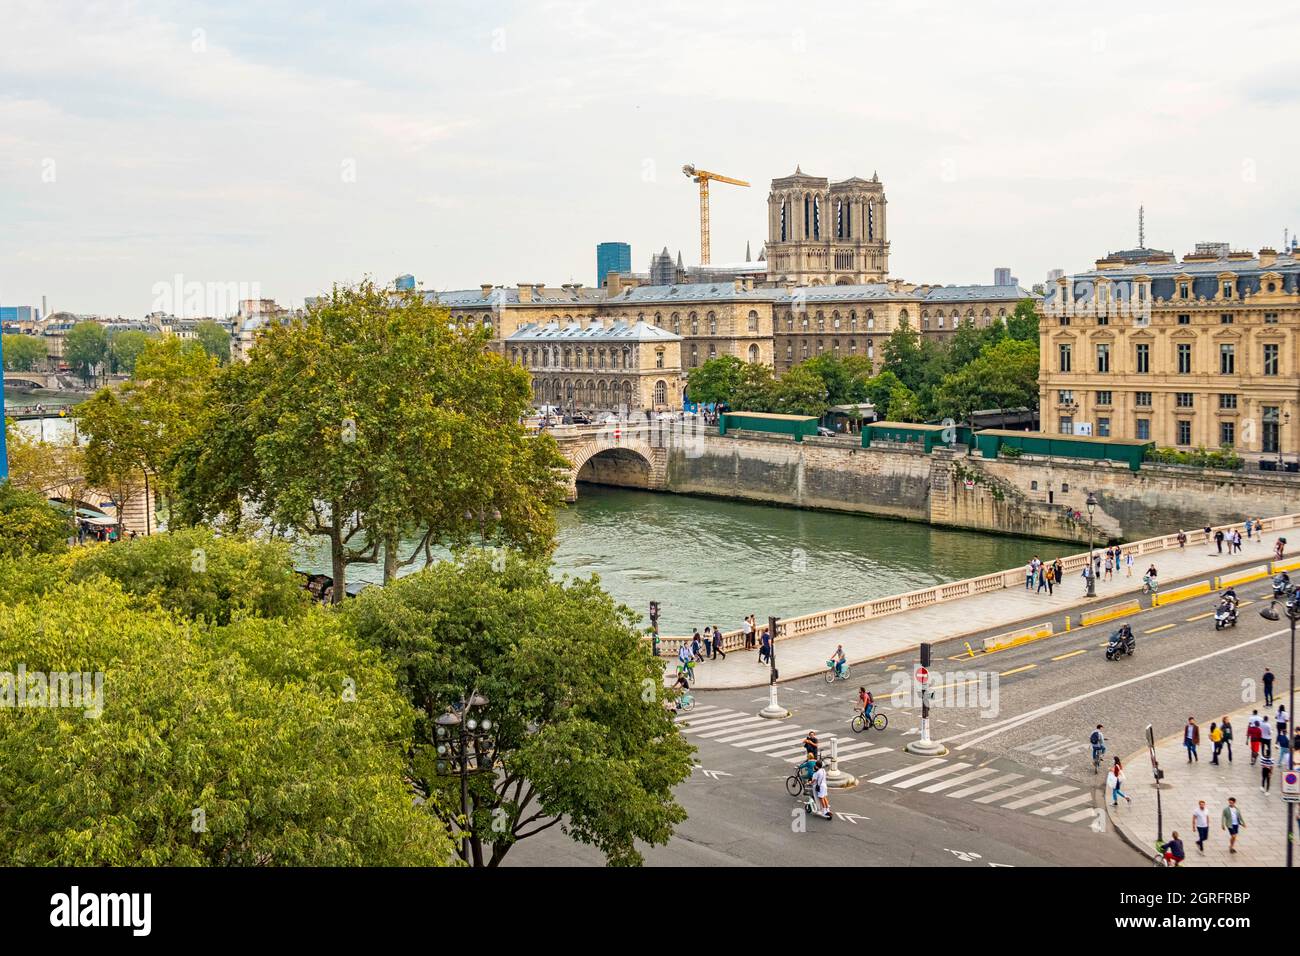 Francia, Parigi, zona dichiarata Patrimonio dell'Umanità dall'UNESCO, la Senna, il pont au change, la Conciergerie e Notre Dame de Paris Foto Stock